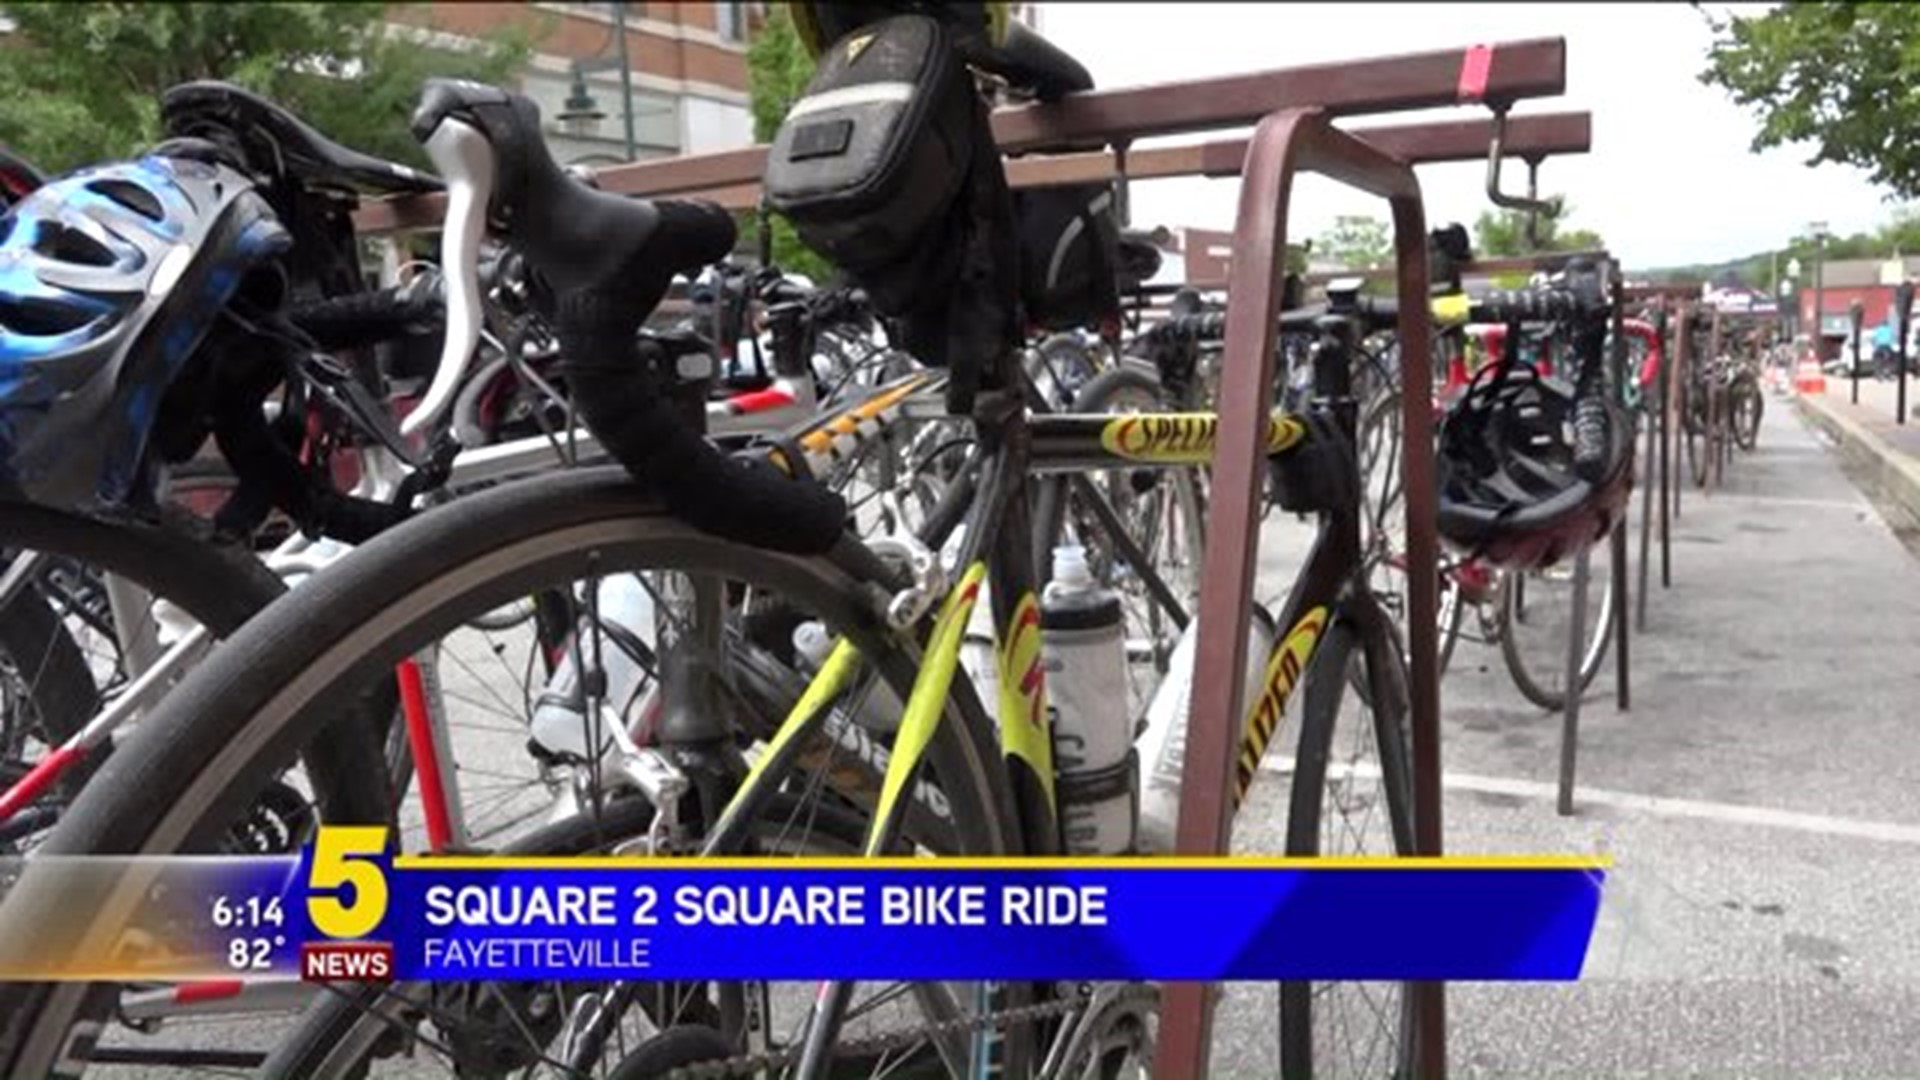 Square 2 Square Bike Ride